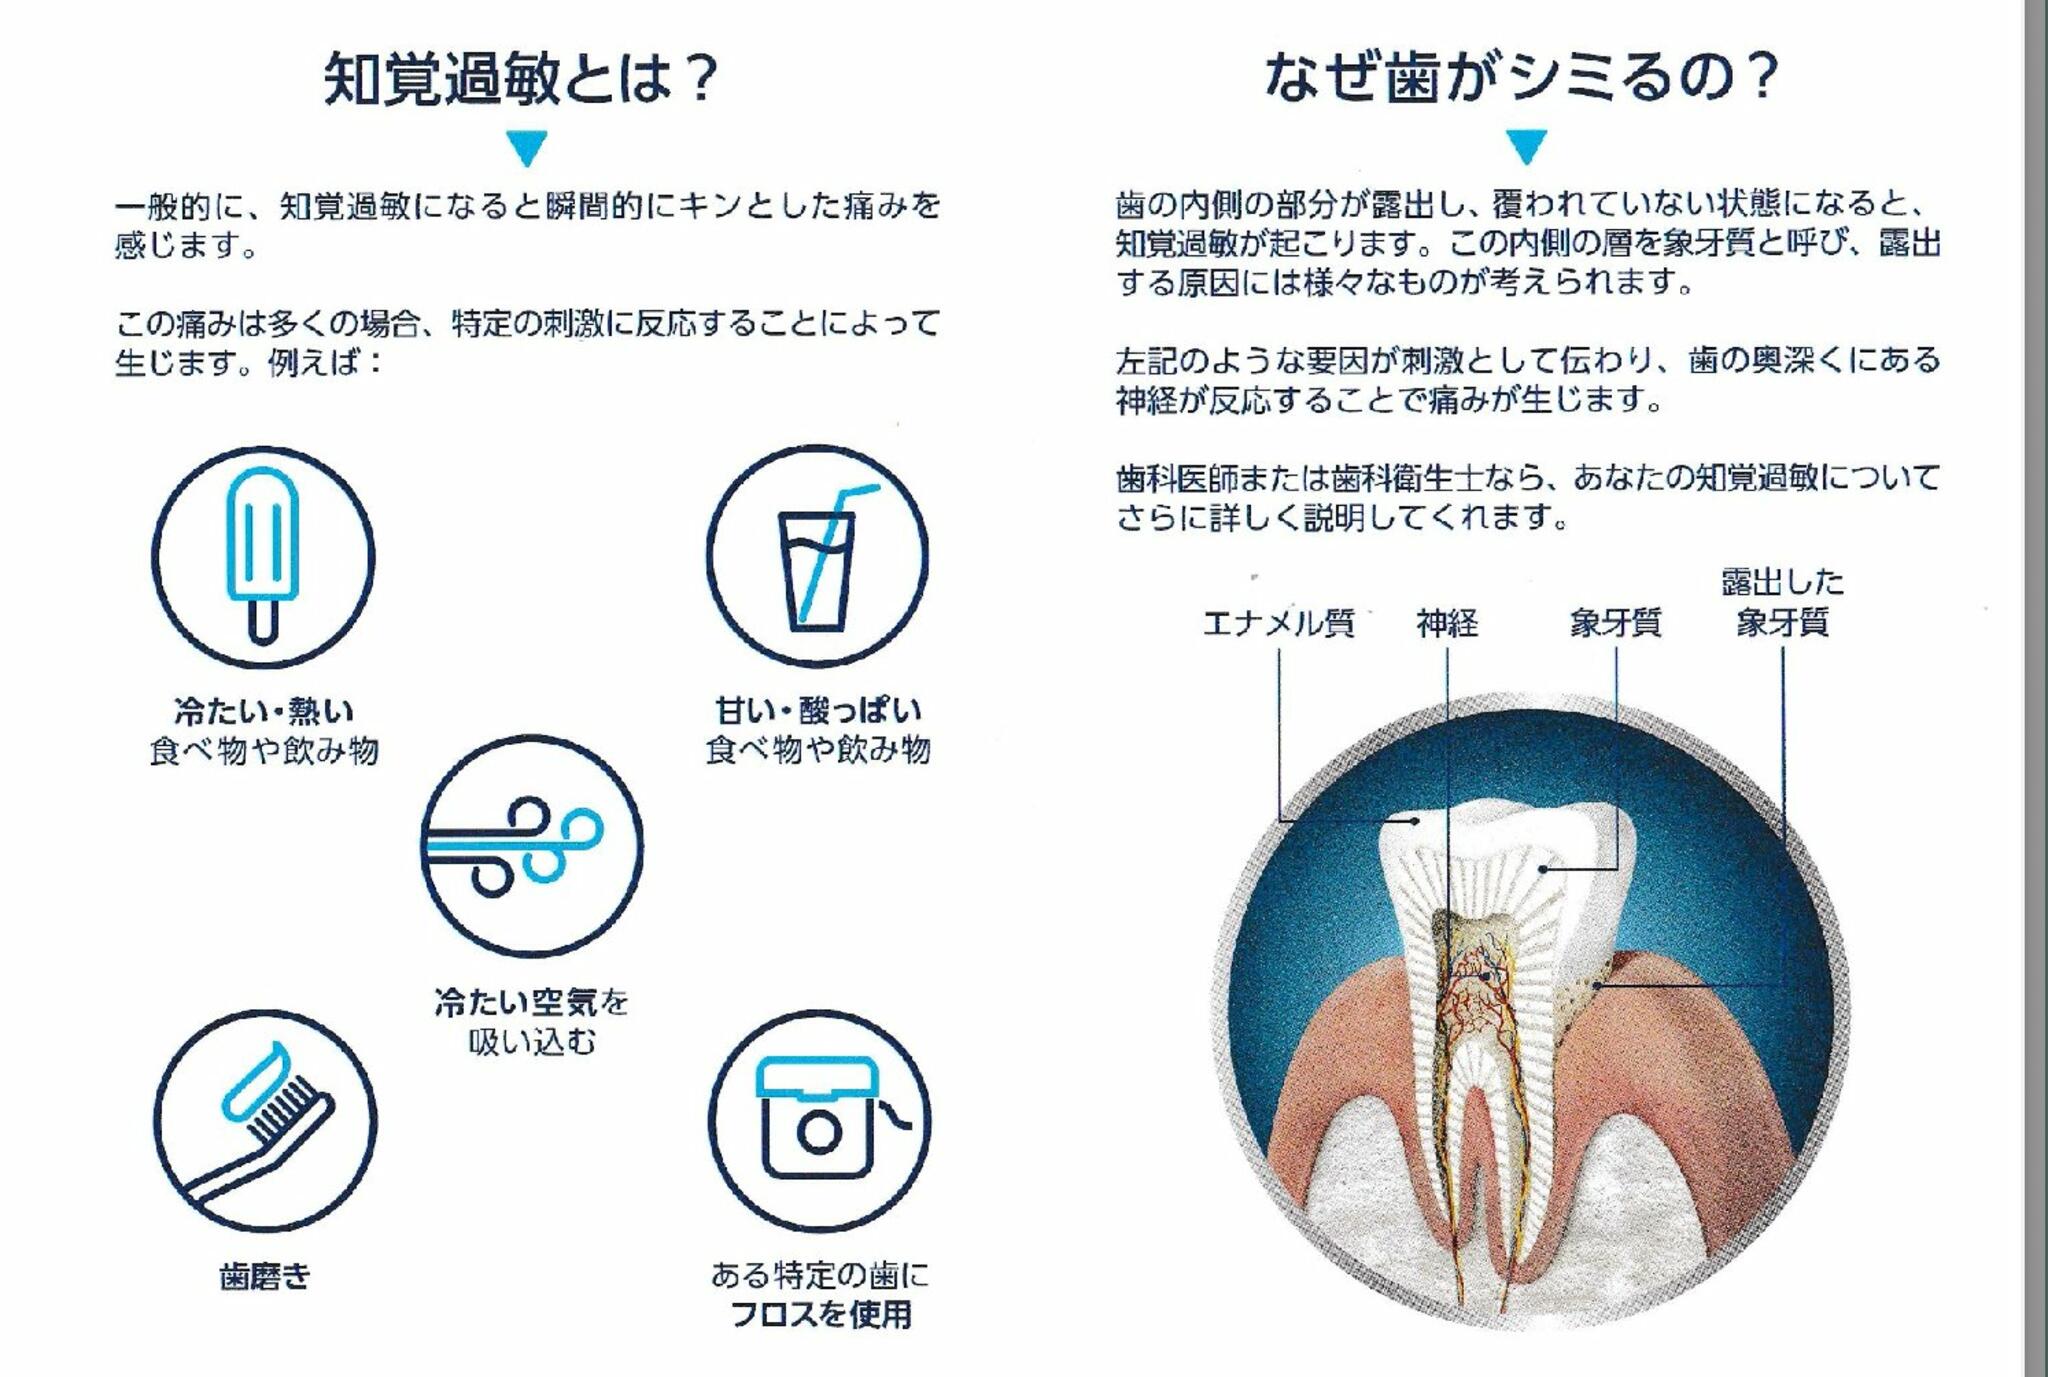 たべ歯科クリニックからのお知らせ(歯がしみるのは)に関する写真